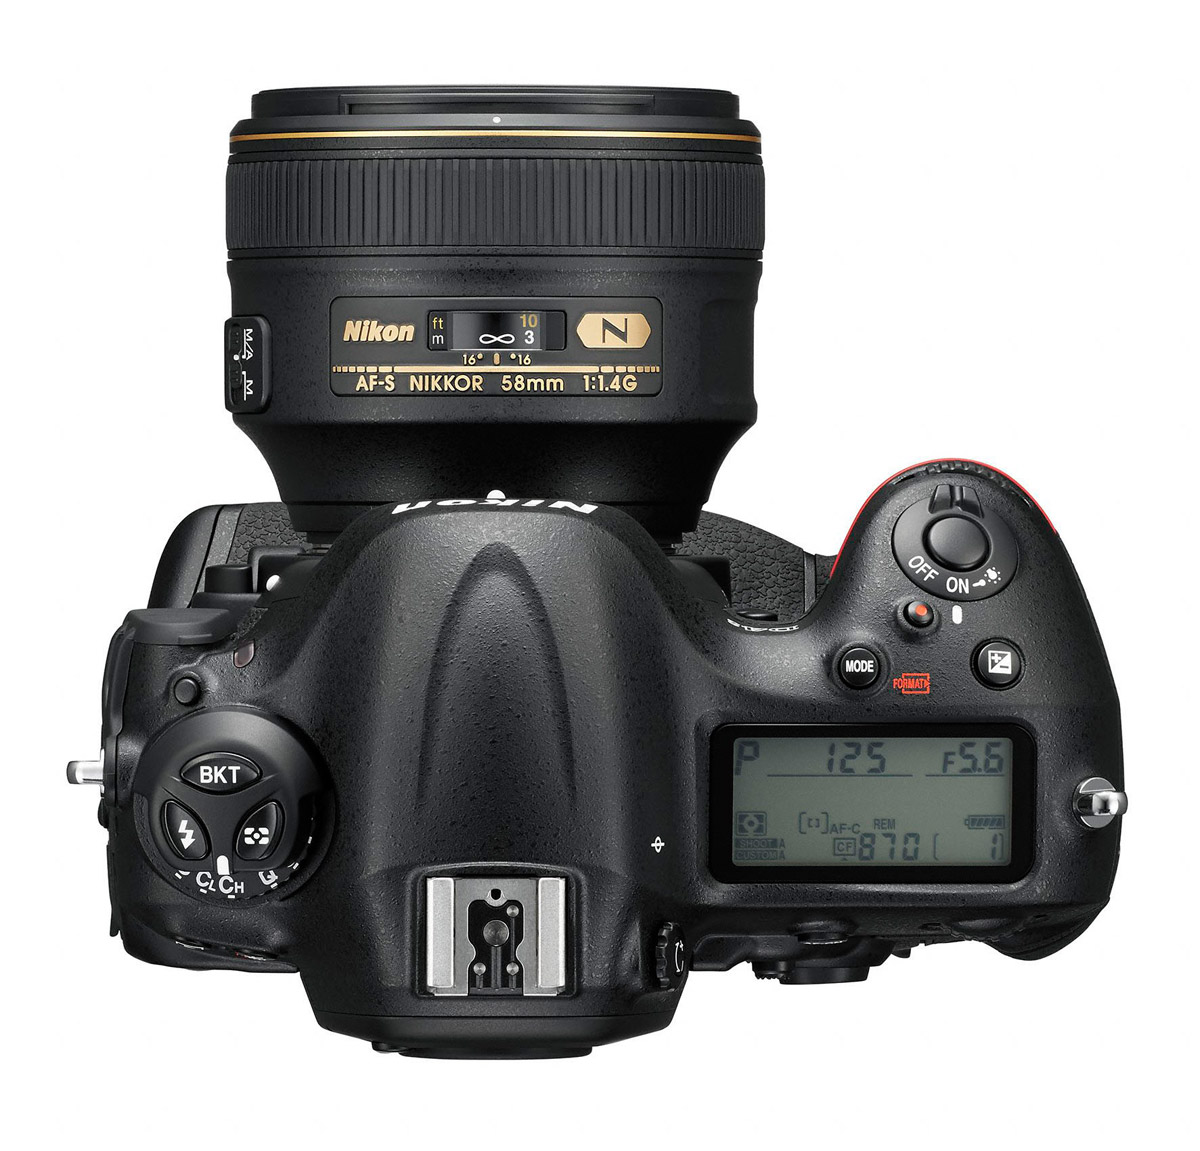 Nikon D4S Flagship DSLR - Top View